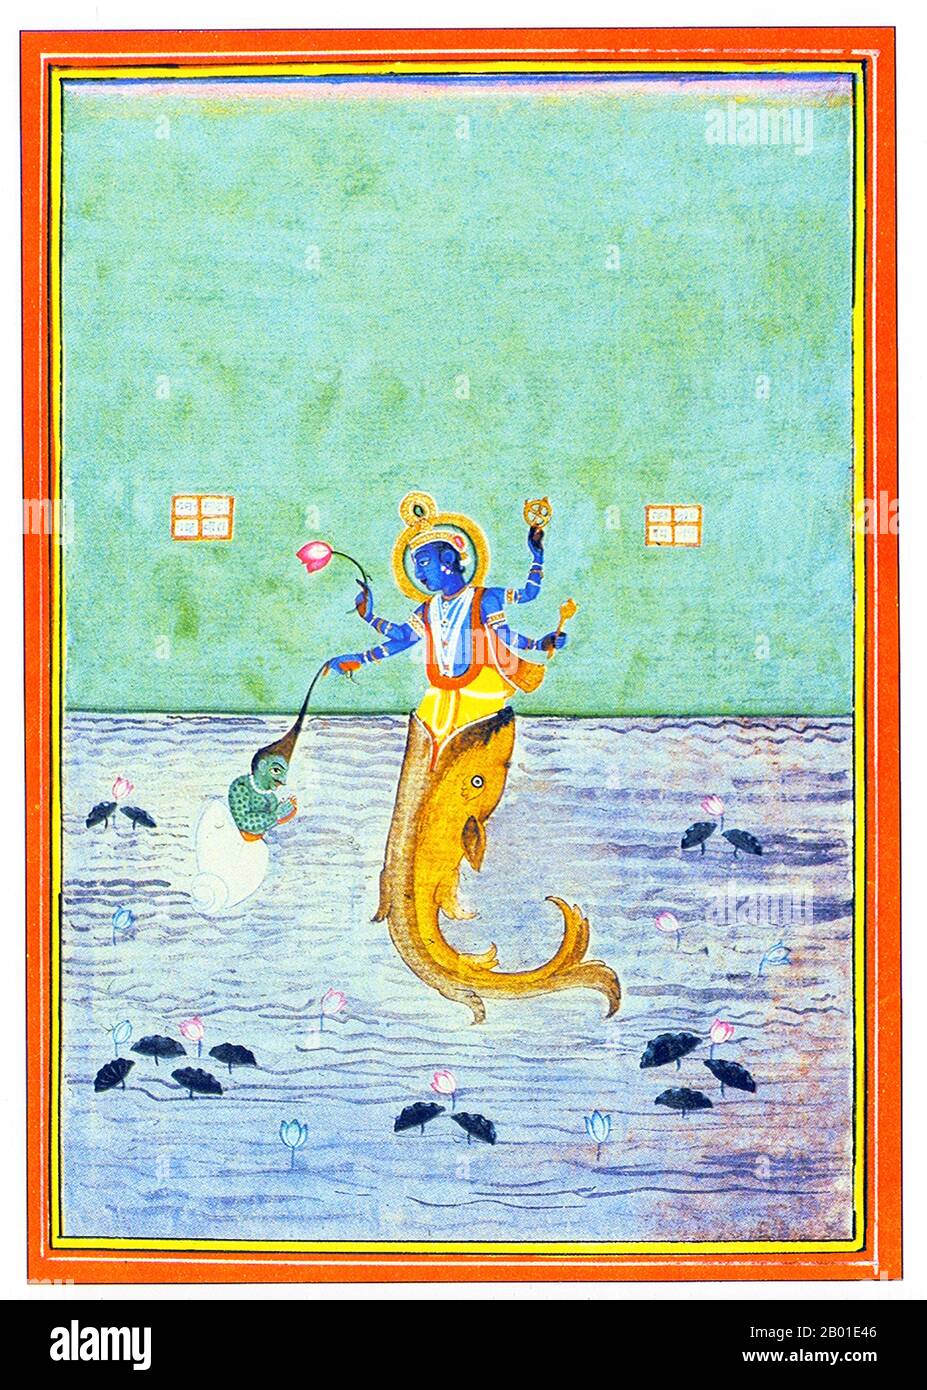 Indien: Lord Matsya, der erste Avatar von Vishnu, rettete Satyavrata. Malerei, Uttar Pradesh, c. 1870. Laut Matsya Purana, dem König der voralten Dravida und Anhänger von Vishnu, wusch sich Satyavrata, der später Manu genannt wurde, in einem Fluss die Hände, als ein kleiner Fisch in seine Hände schwamm und ihn bat, sein Leben zu retten. Er hat es in ein Glas getan, das bald überwuchs. Er brachte es dann in einen Tank, einen Fluss und schließlich in den Ozean, aber vergeblich. Der Fisch zeigte sich dann als Vishnu und sagte ihm, dass innerhalb von sieben Tagen eine Sintflut stattfinden würde, die alle Leben zerstören würde. Stockfoto